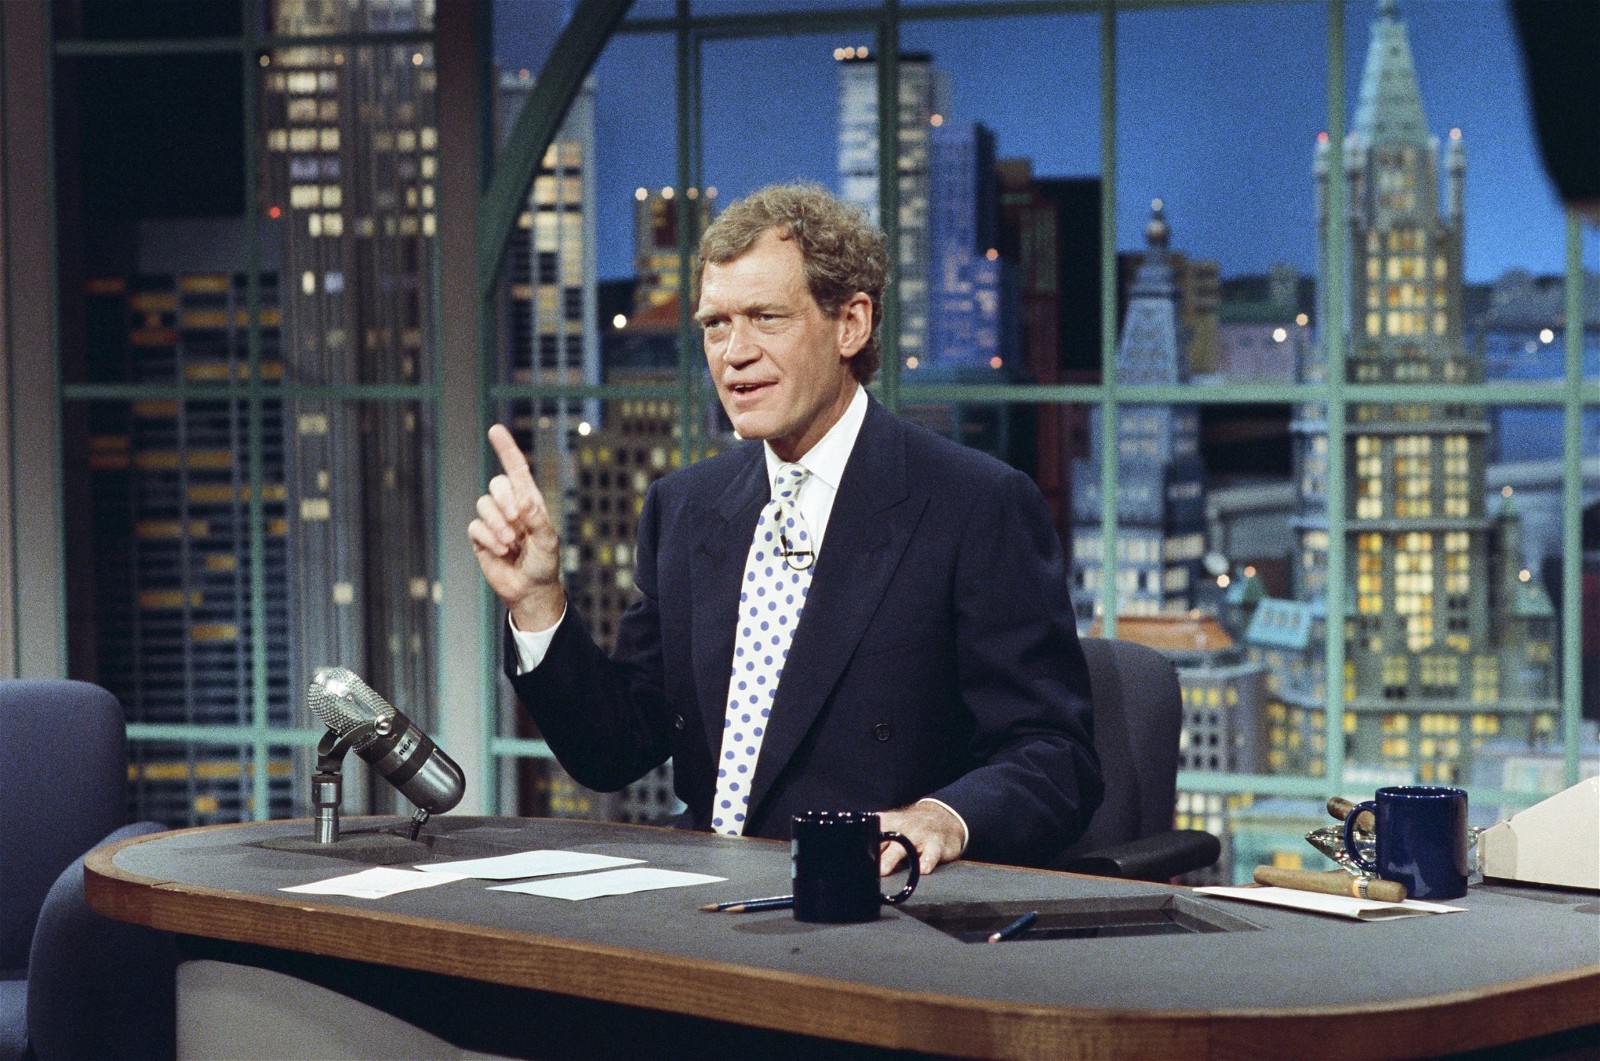 Late night talk show host David Letterman